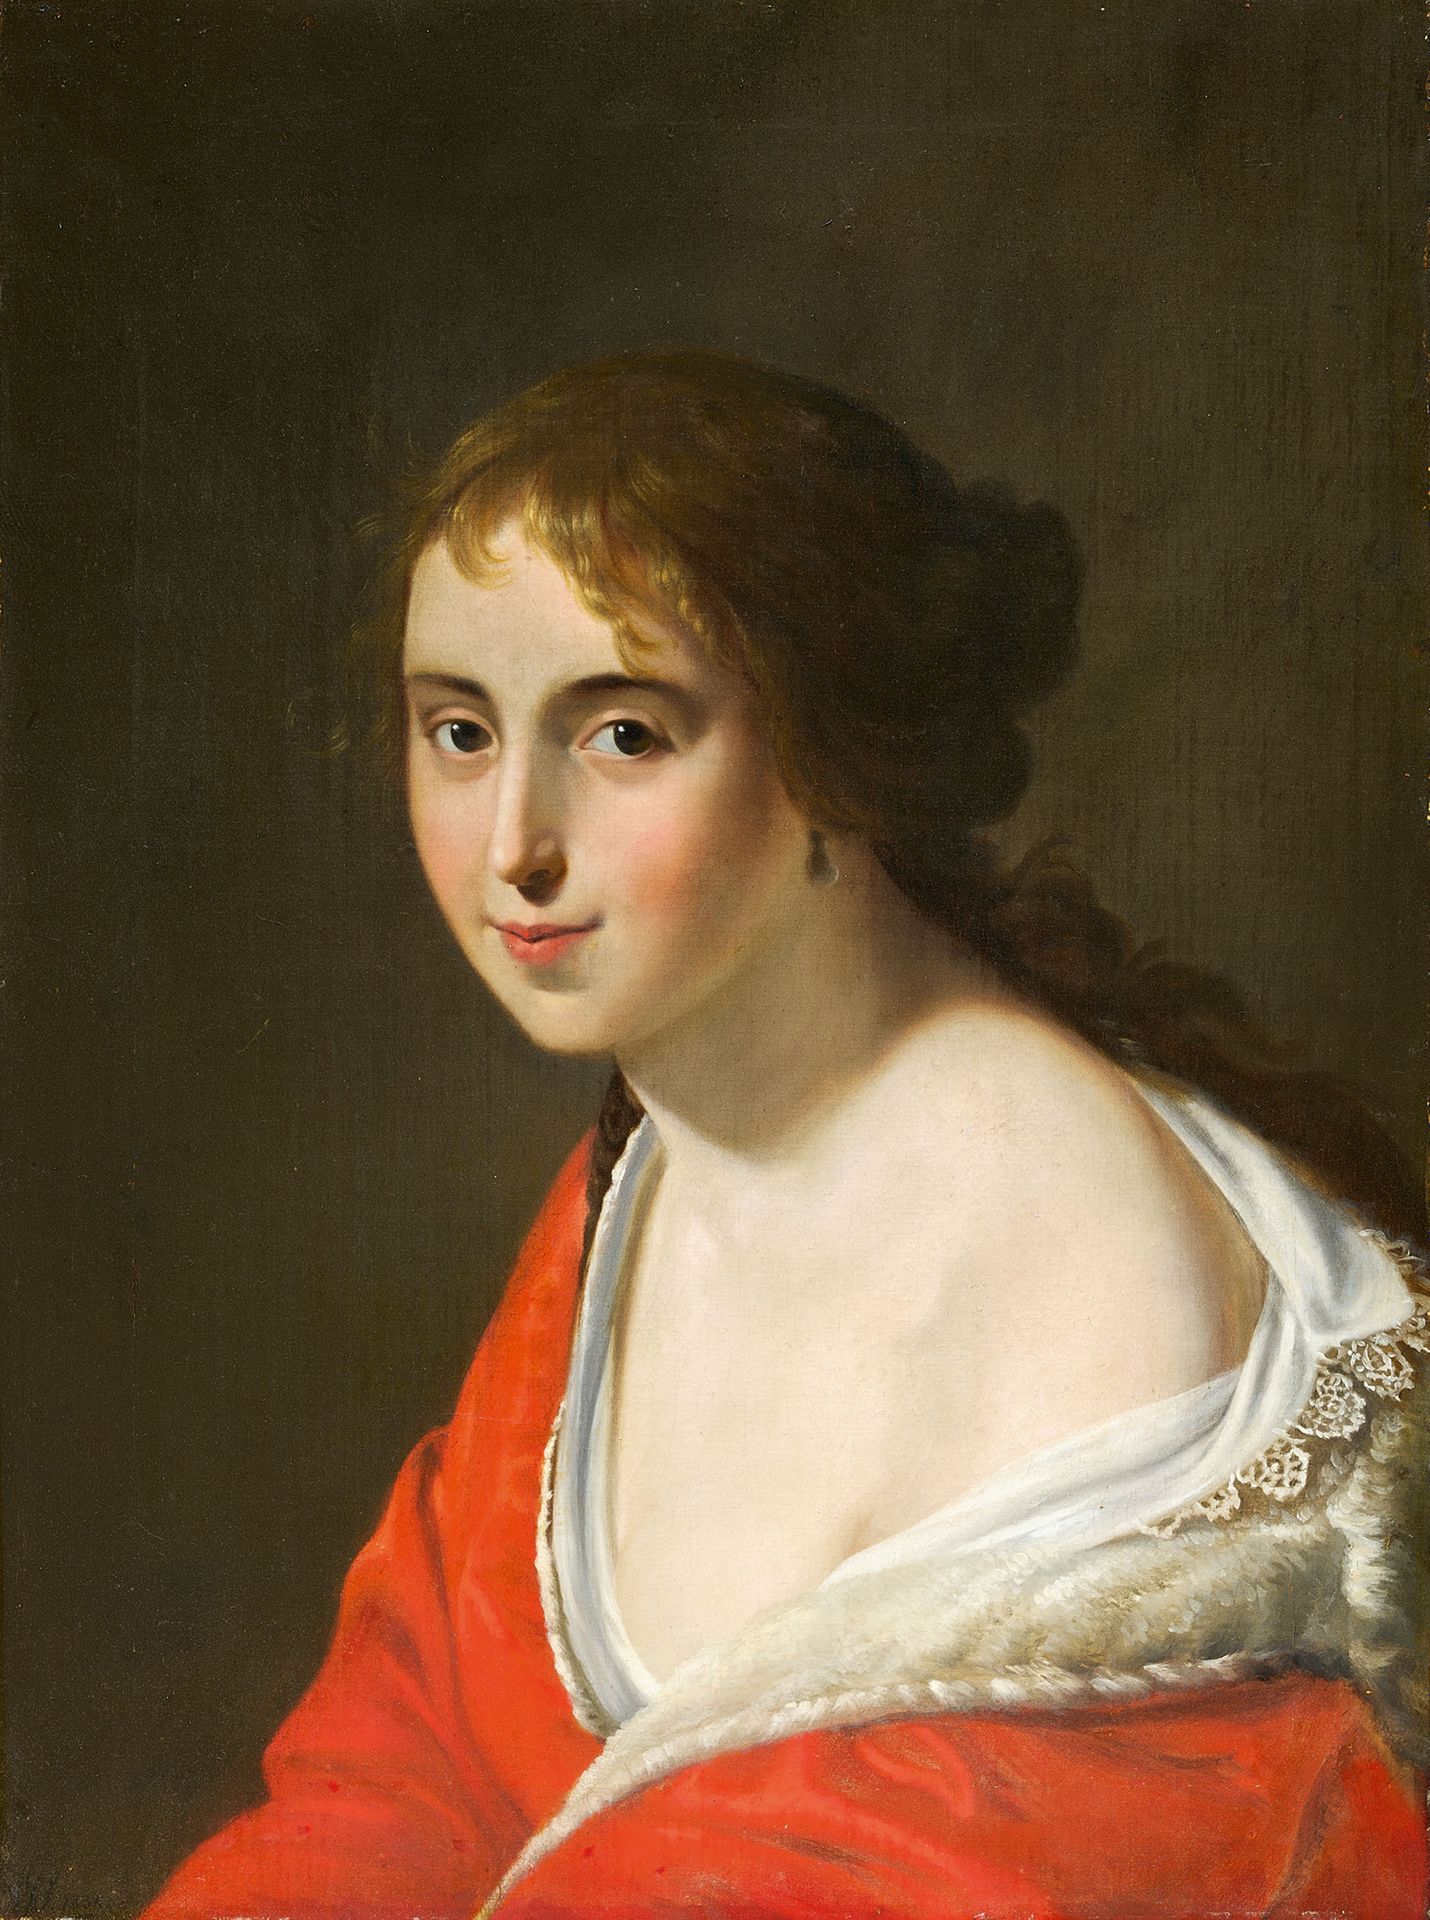 ÉCOLE FRANÇAISE DU DÉBUT DU XIXe SIÈCLE 穿红衣服的女人的画像
布面油画 
60,5 x 46,7 cm